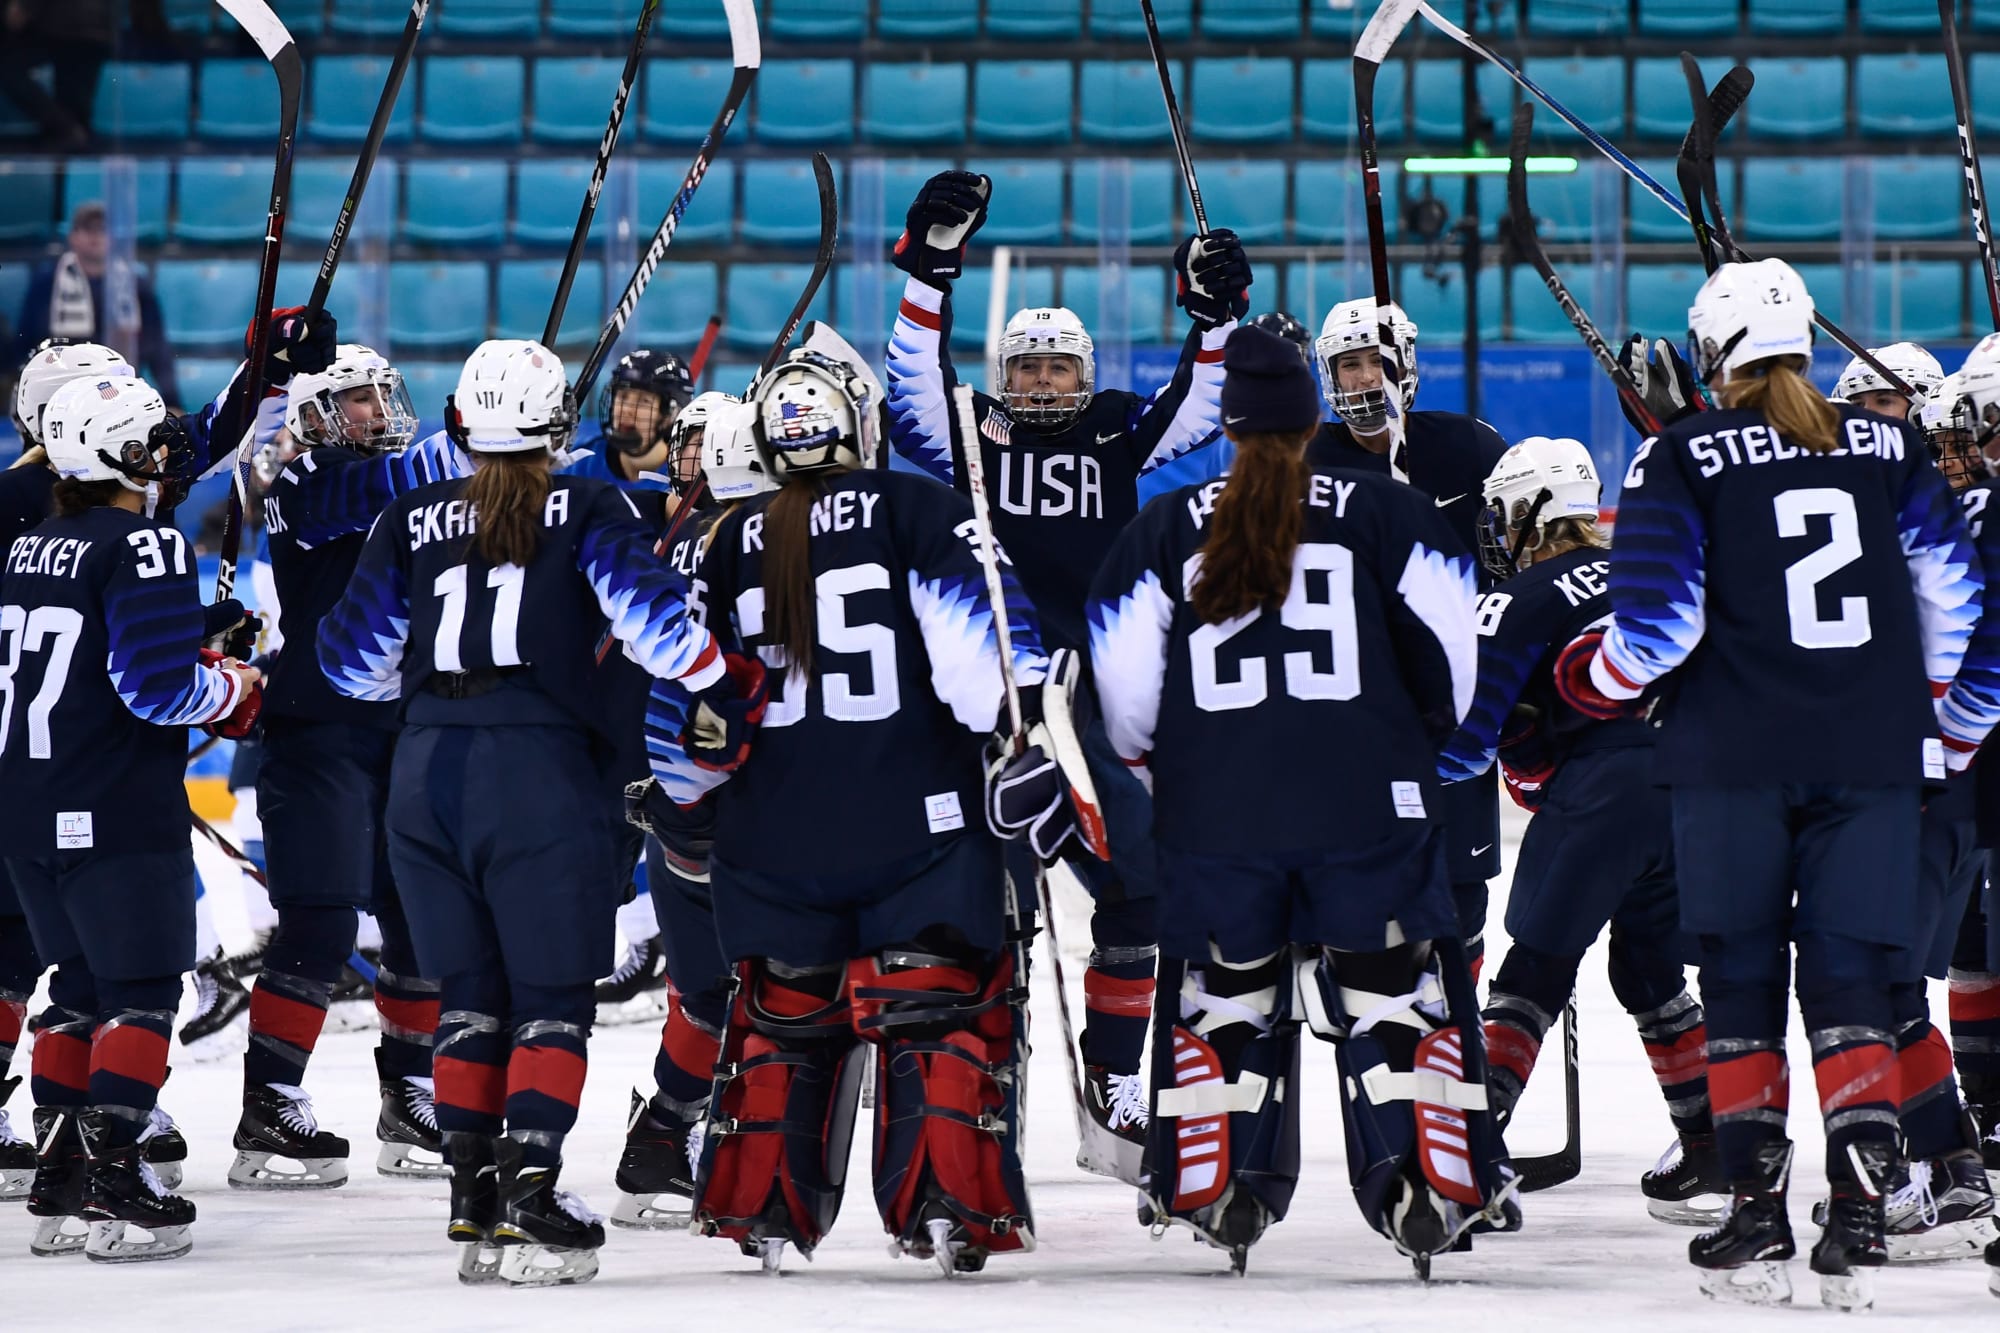 Olympics women's hockey semifinal, USA vs. Finland highlights